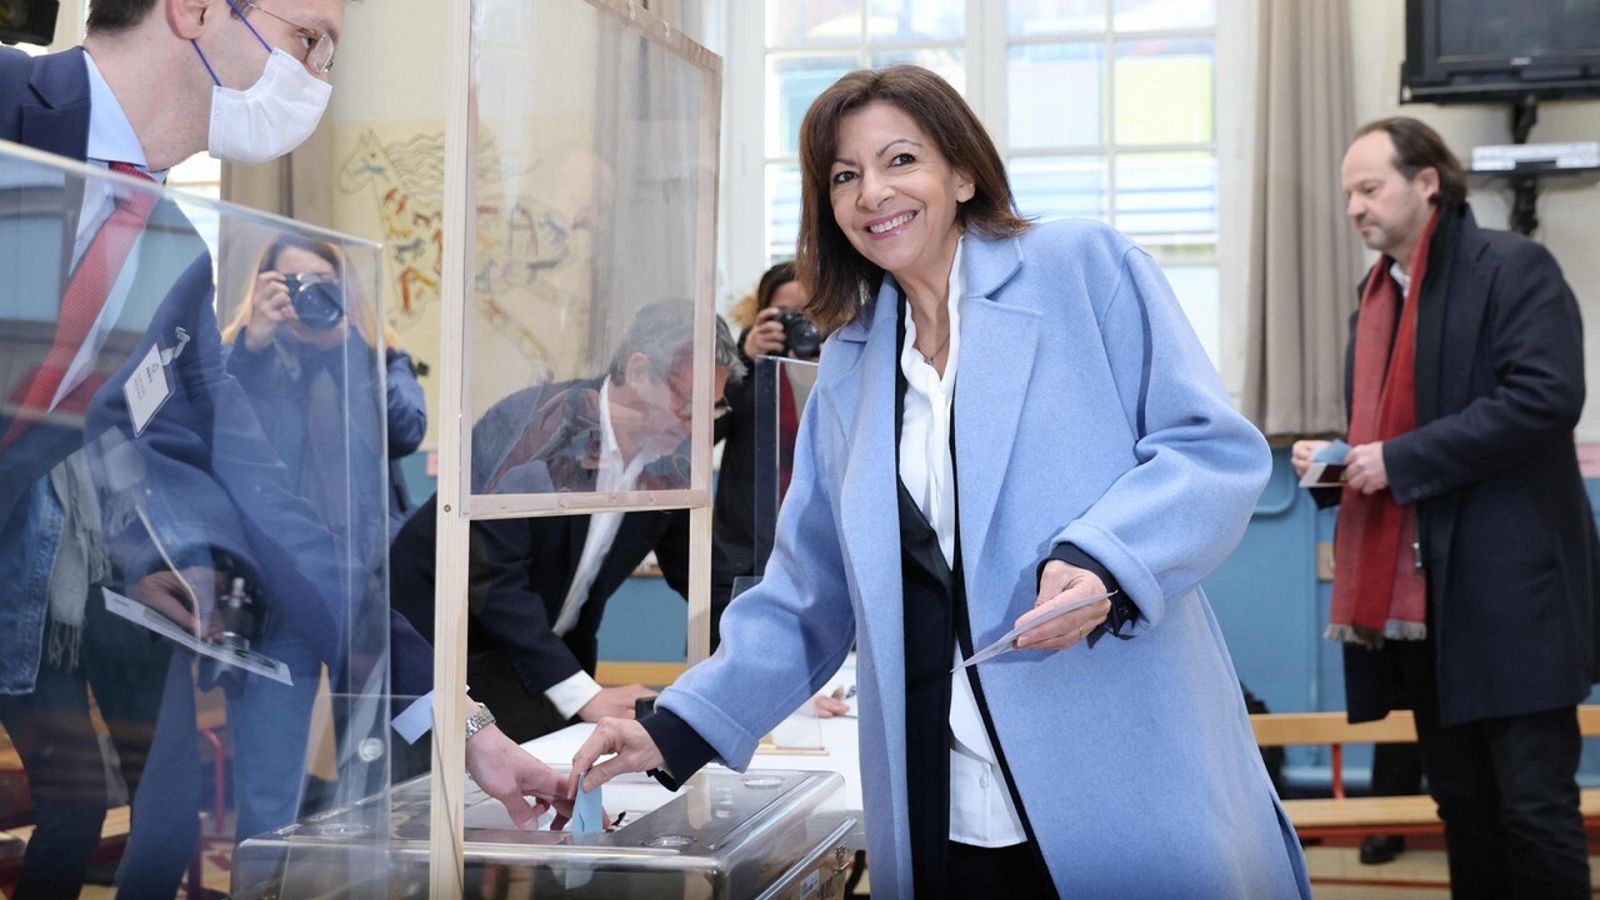 Elecciones Francia: Anne Hidalgo, del Partido Socialista, es la primera candidata en votar  - Ver ahora